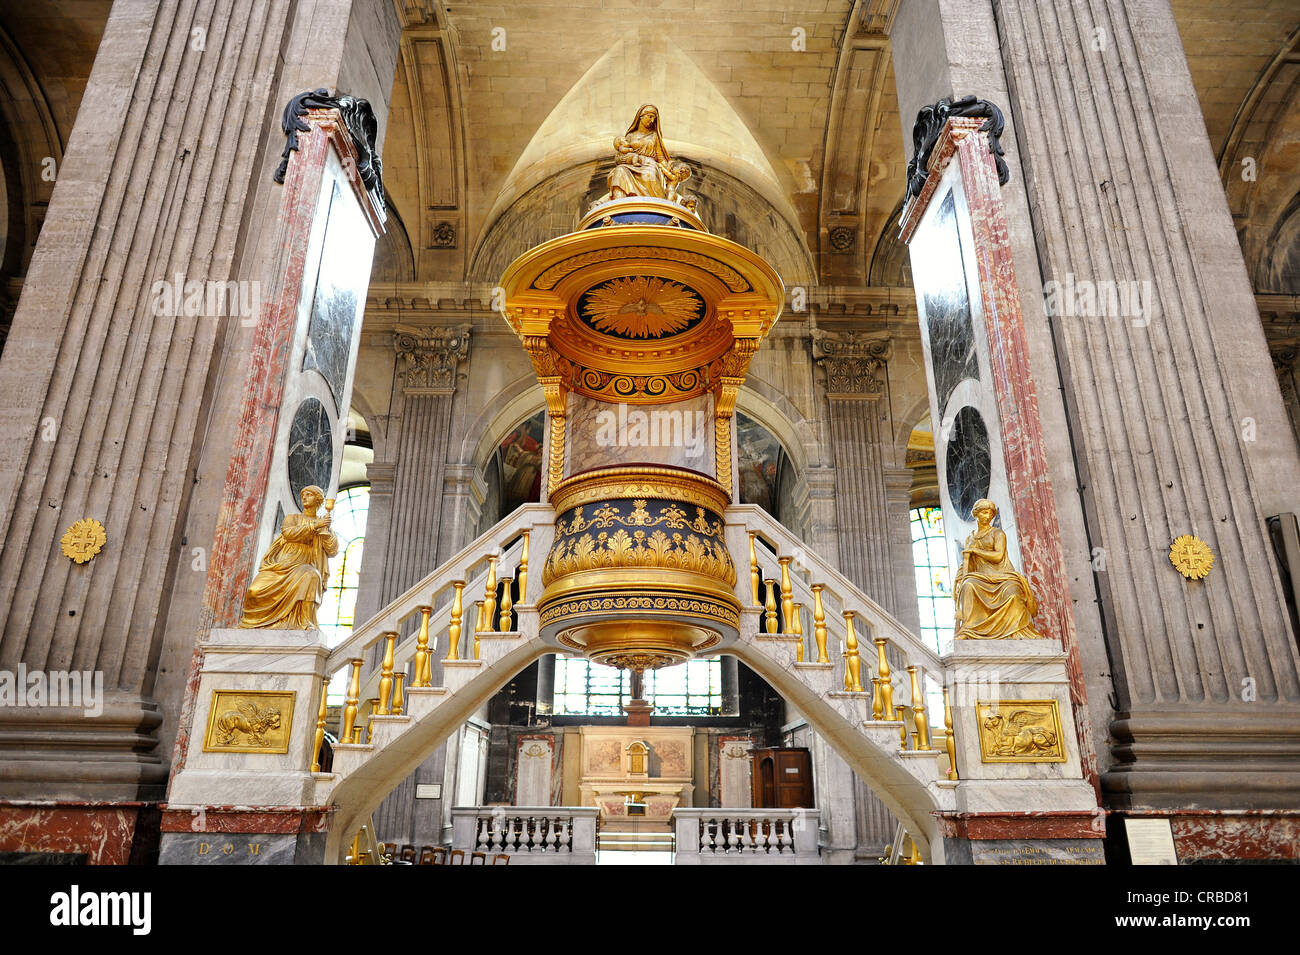 Histórico, Golden ornamentado púlpito La Chaire à Prêcher, diseñada por Charles de Wailly, iglesia parroquial católica de San Sulpicio de Foto de stock